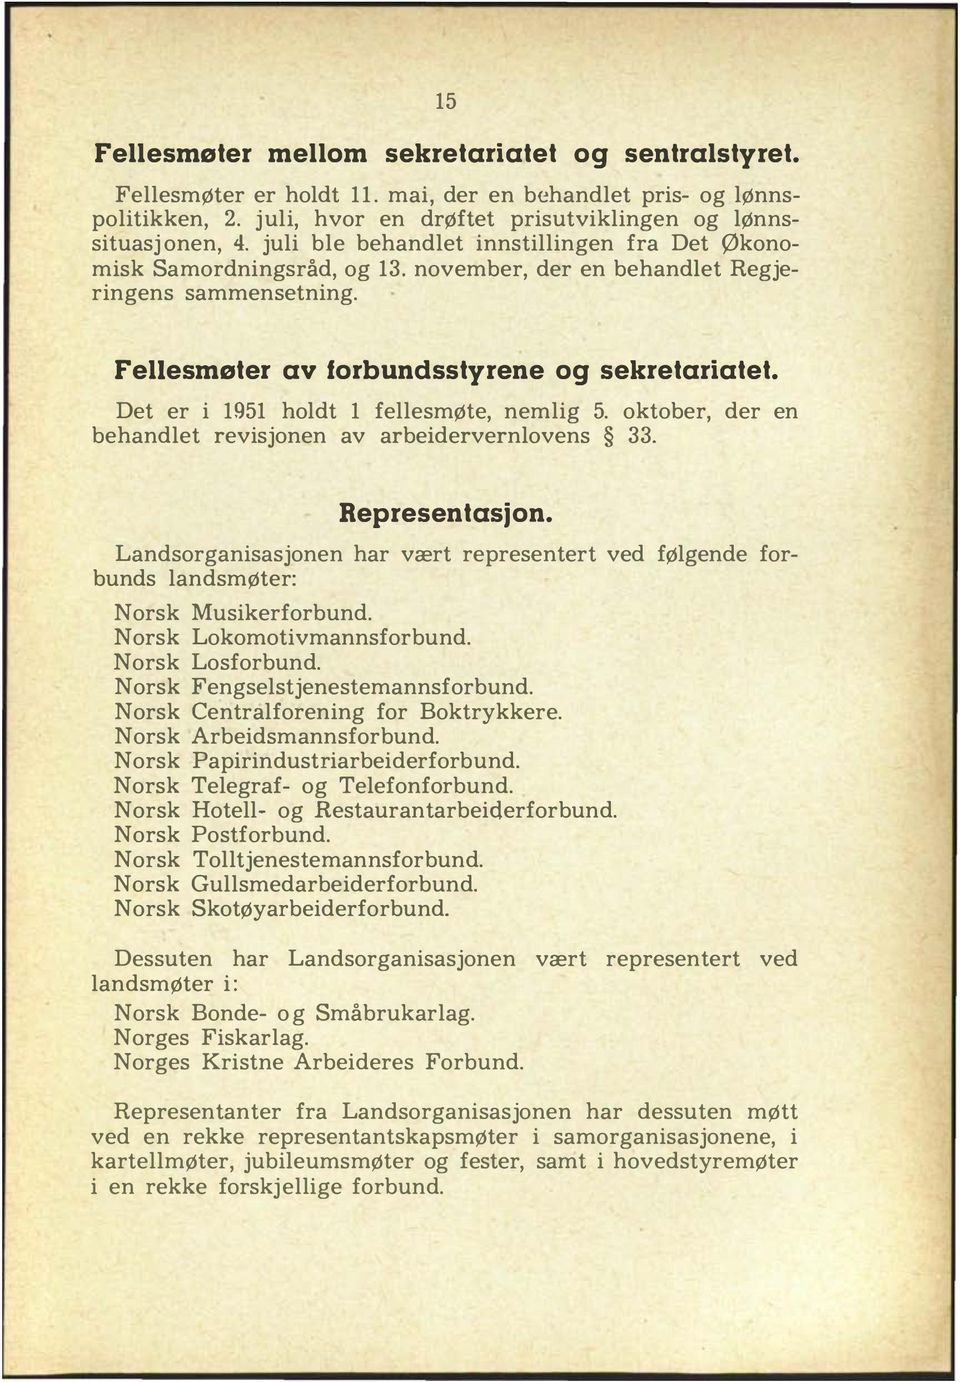 Det er i 1951 holdt 1 fellesmøte, nemlig 5. oktober, der en behandlet revisjonen av arbeidervernlovens 33. Representasjon.